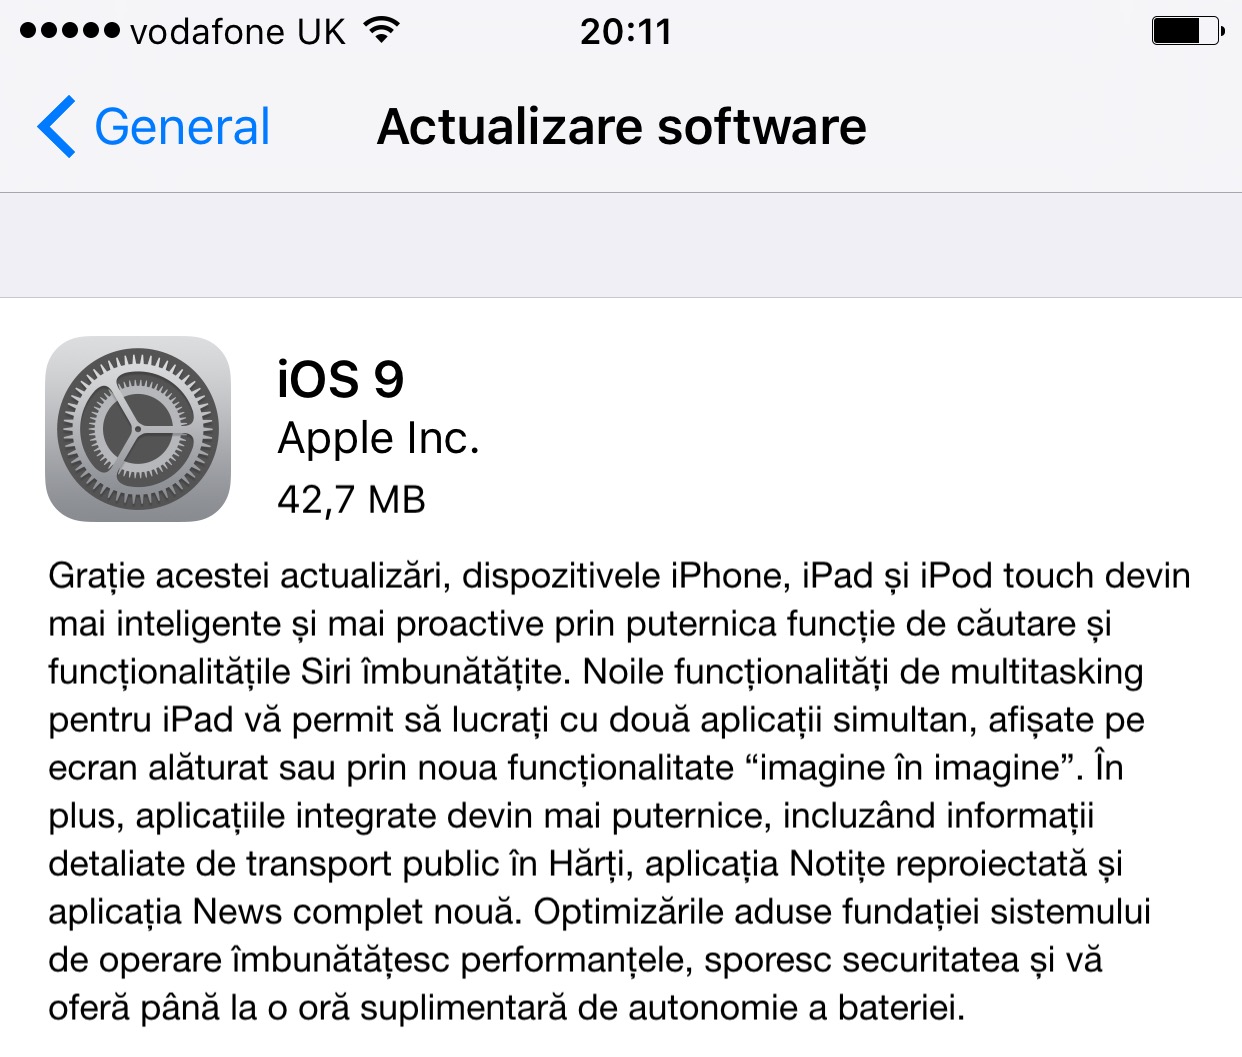 iOS 9 sent